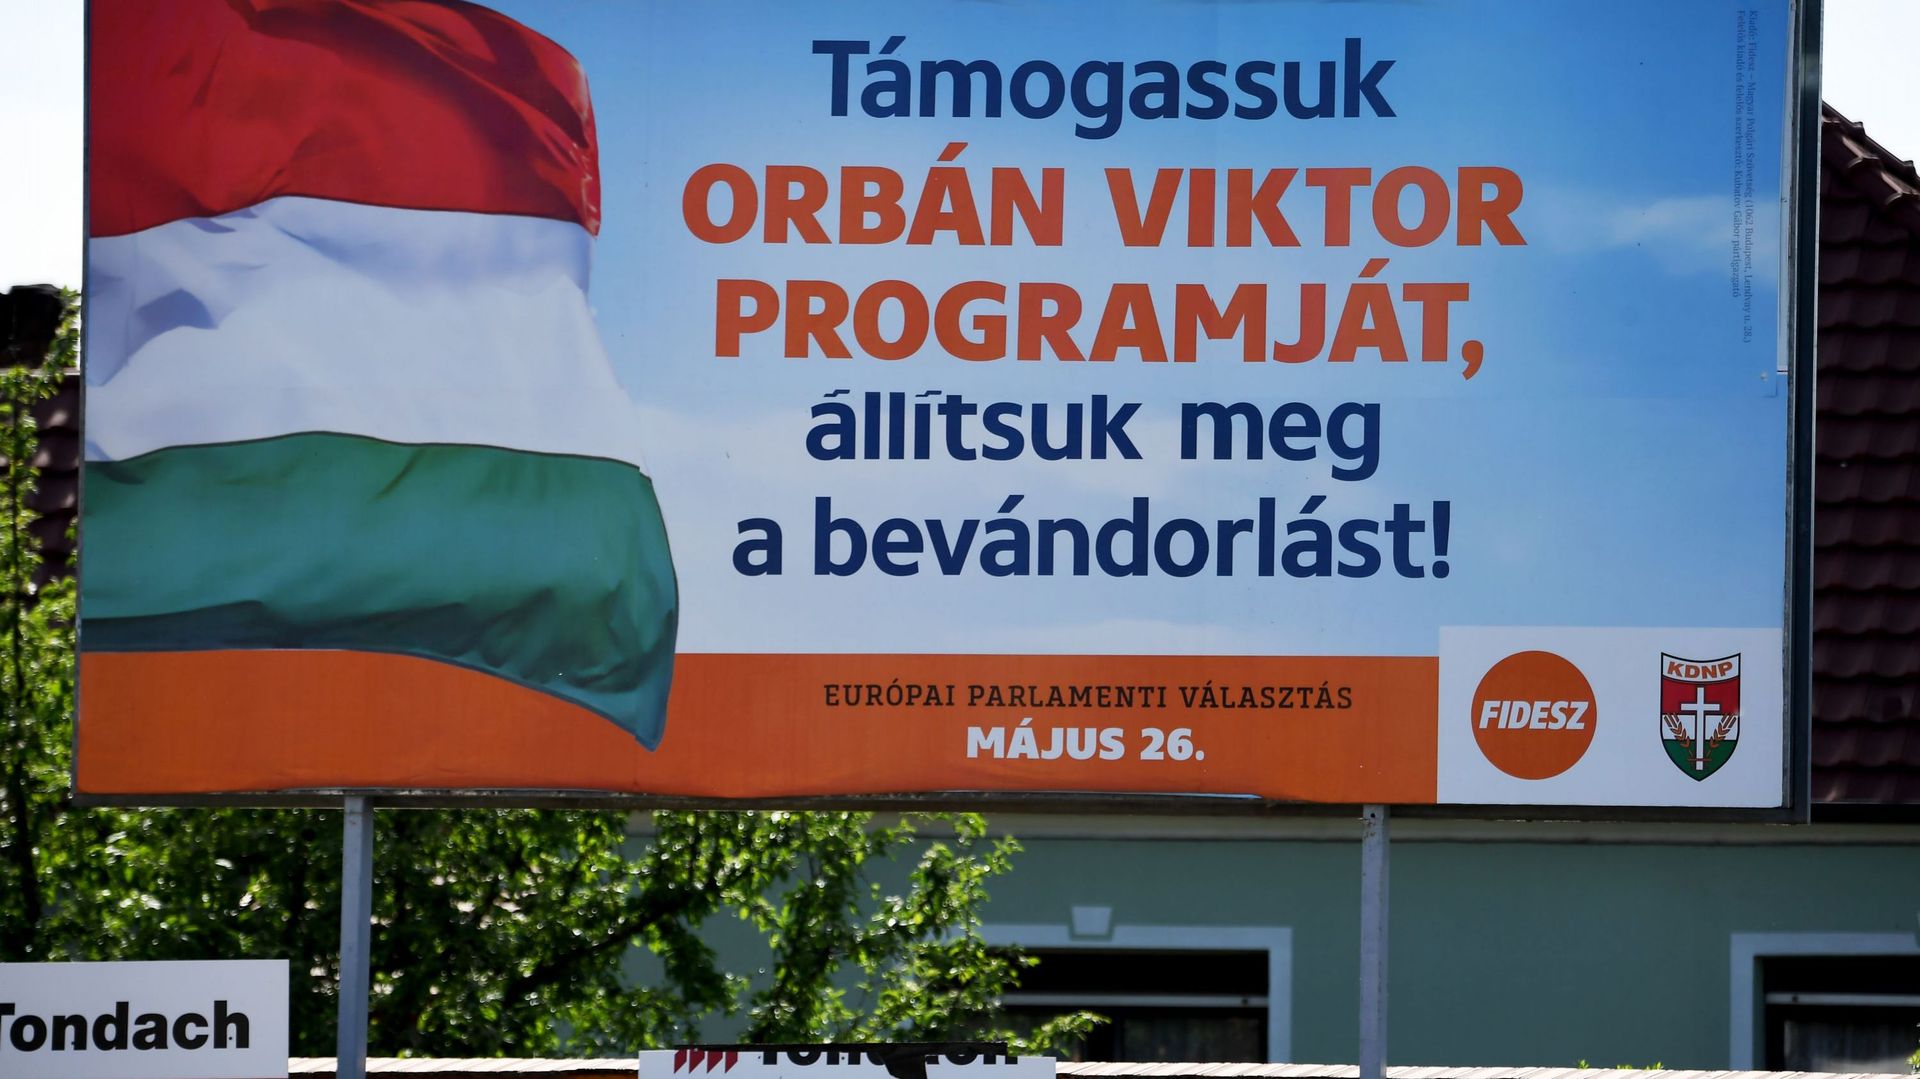 Au coeur de la Hongrie de Viktor Orban, l'Europe est synonyme d'"invasion migratoire"